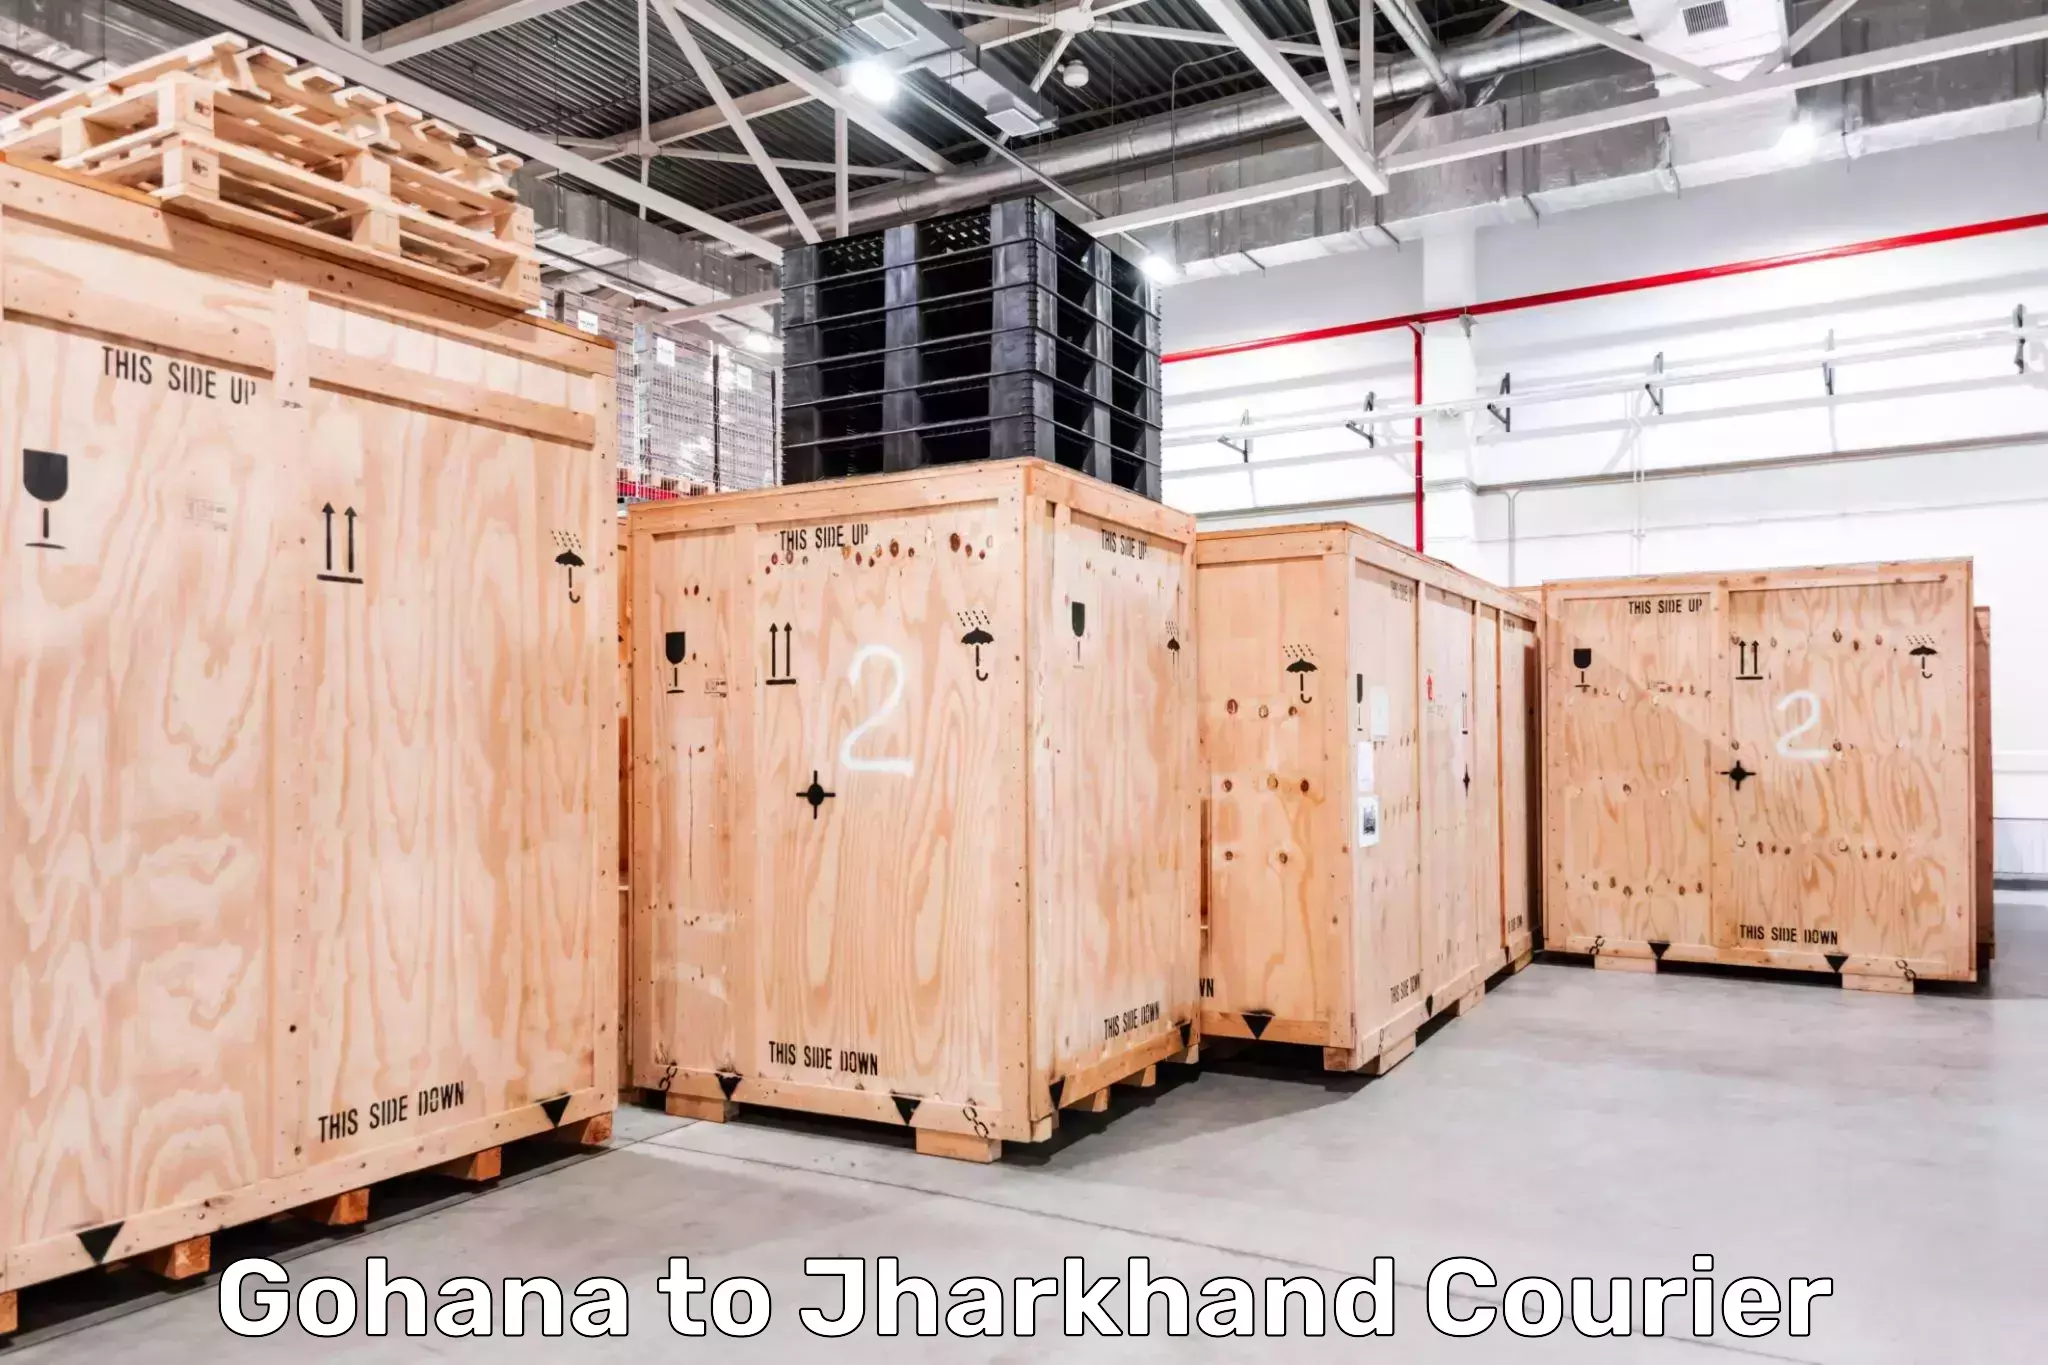 Express logistics providers Gohana to Jharkhand